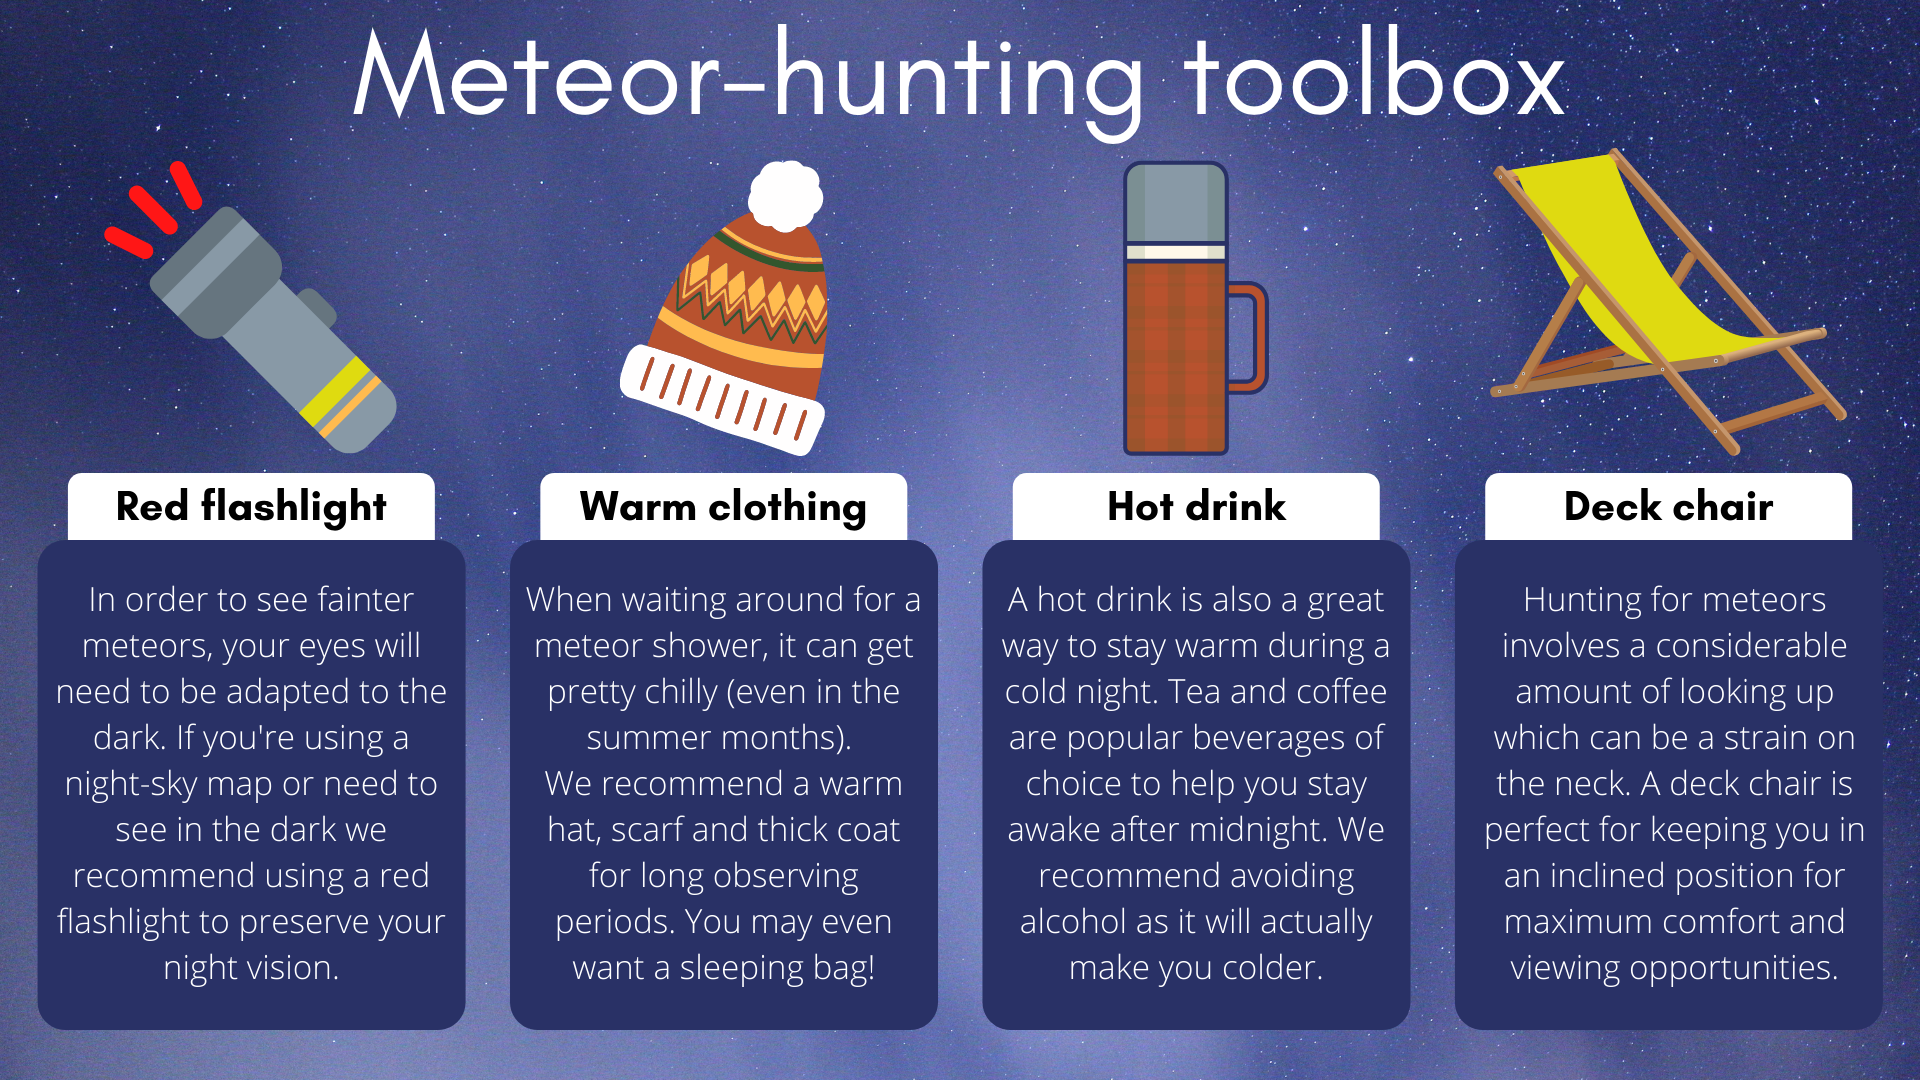 Voor de perfecte meteorenjachtervaring heb je een referentiezaklamp, warme kleding, een warm drankje en een mooie ligstoel nodig.